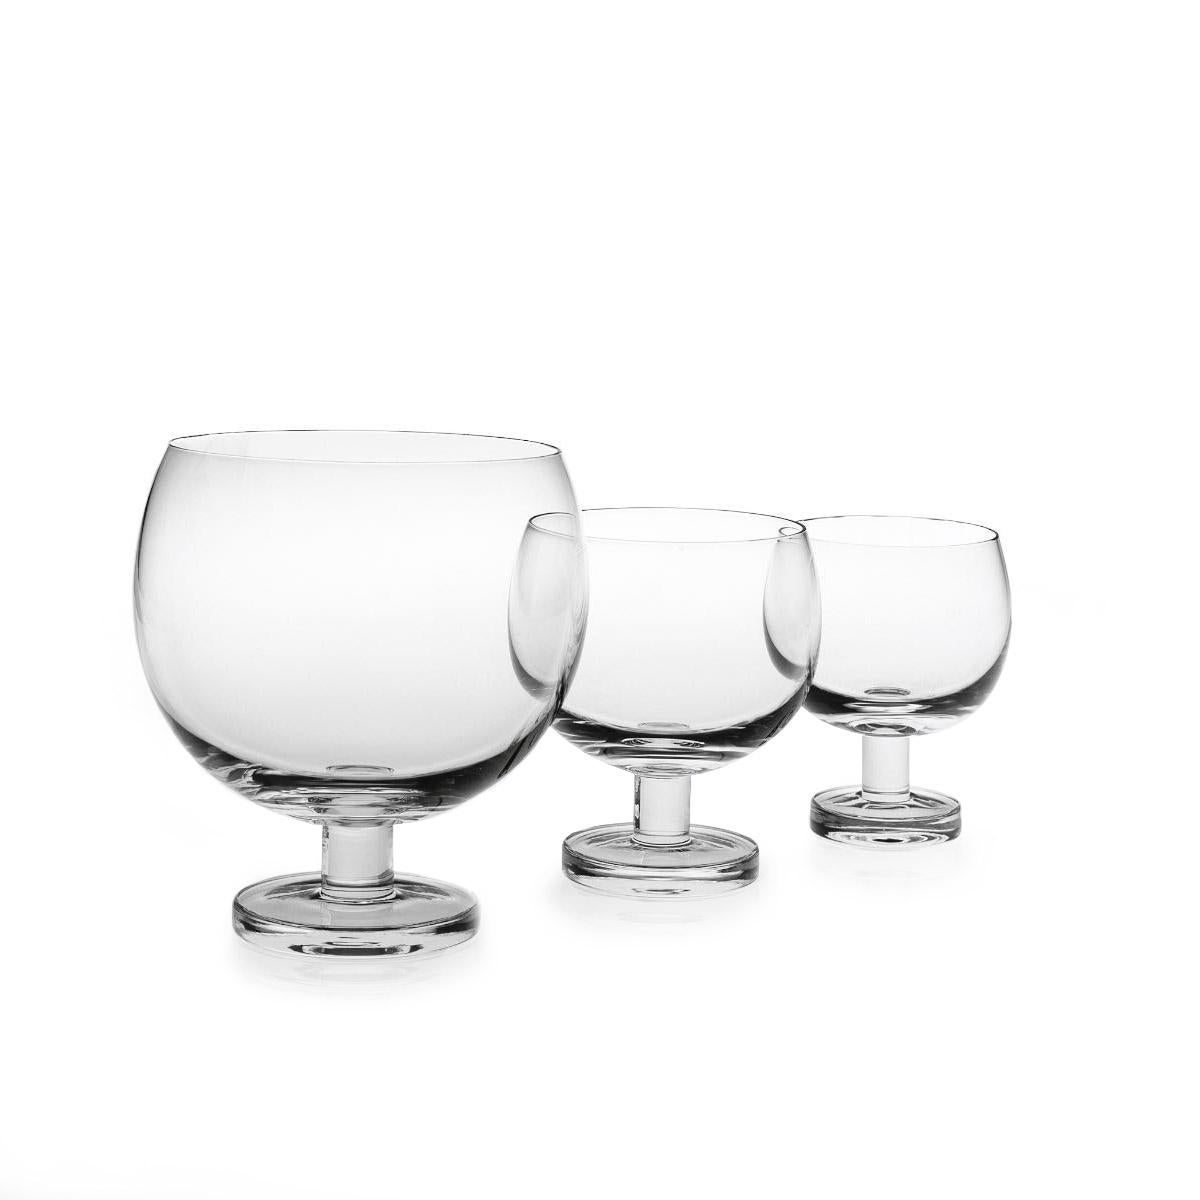 Weinglas aus geblasenem Glas in einer Form. Die Tulip-Kollektion ist eine Glaswarenfamilie von Aldo Cibic, der diese Stücke auf der Grenze zwischen klassischem und postmodernem Design entworfen hat. Die kühn-schlichten geometrischen Formen sind